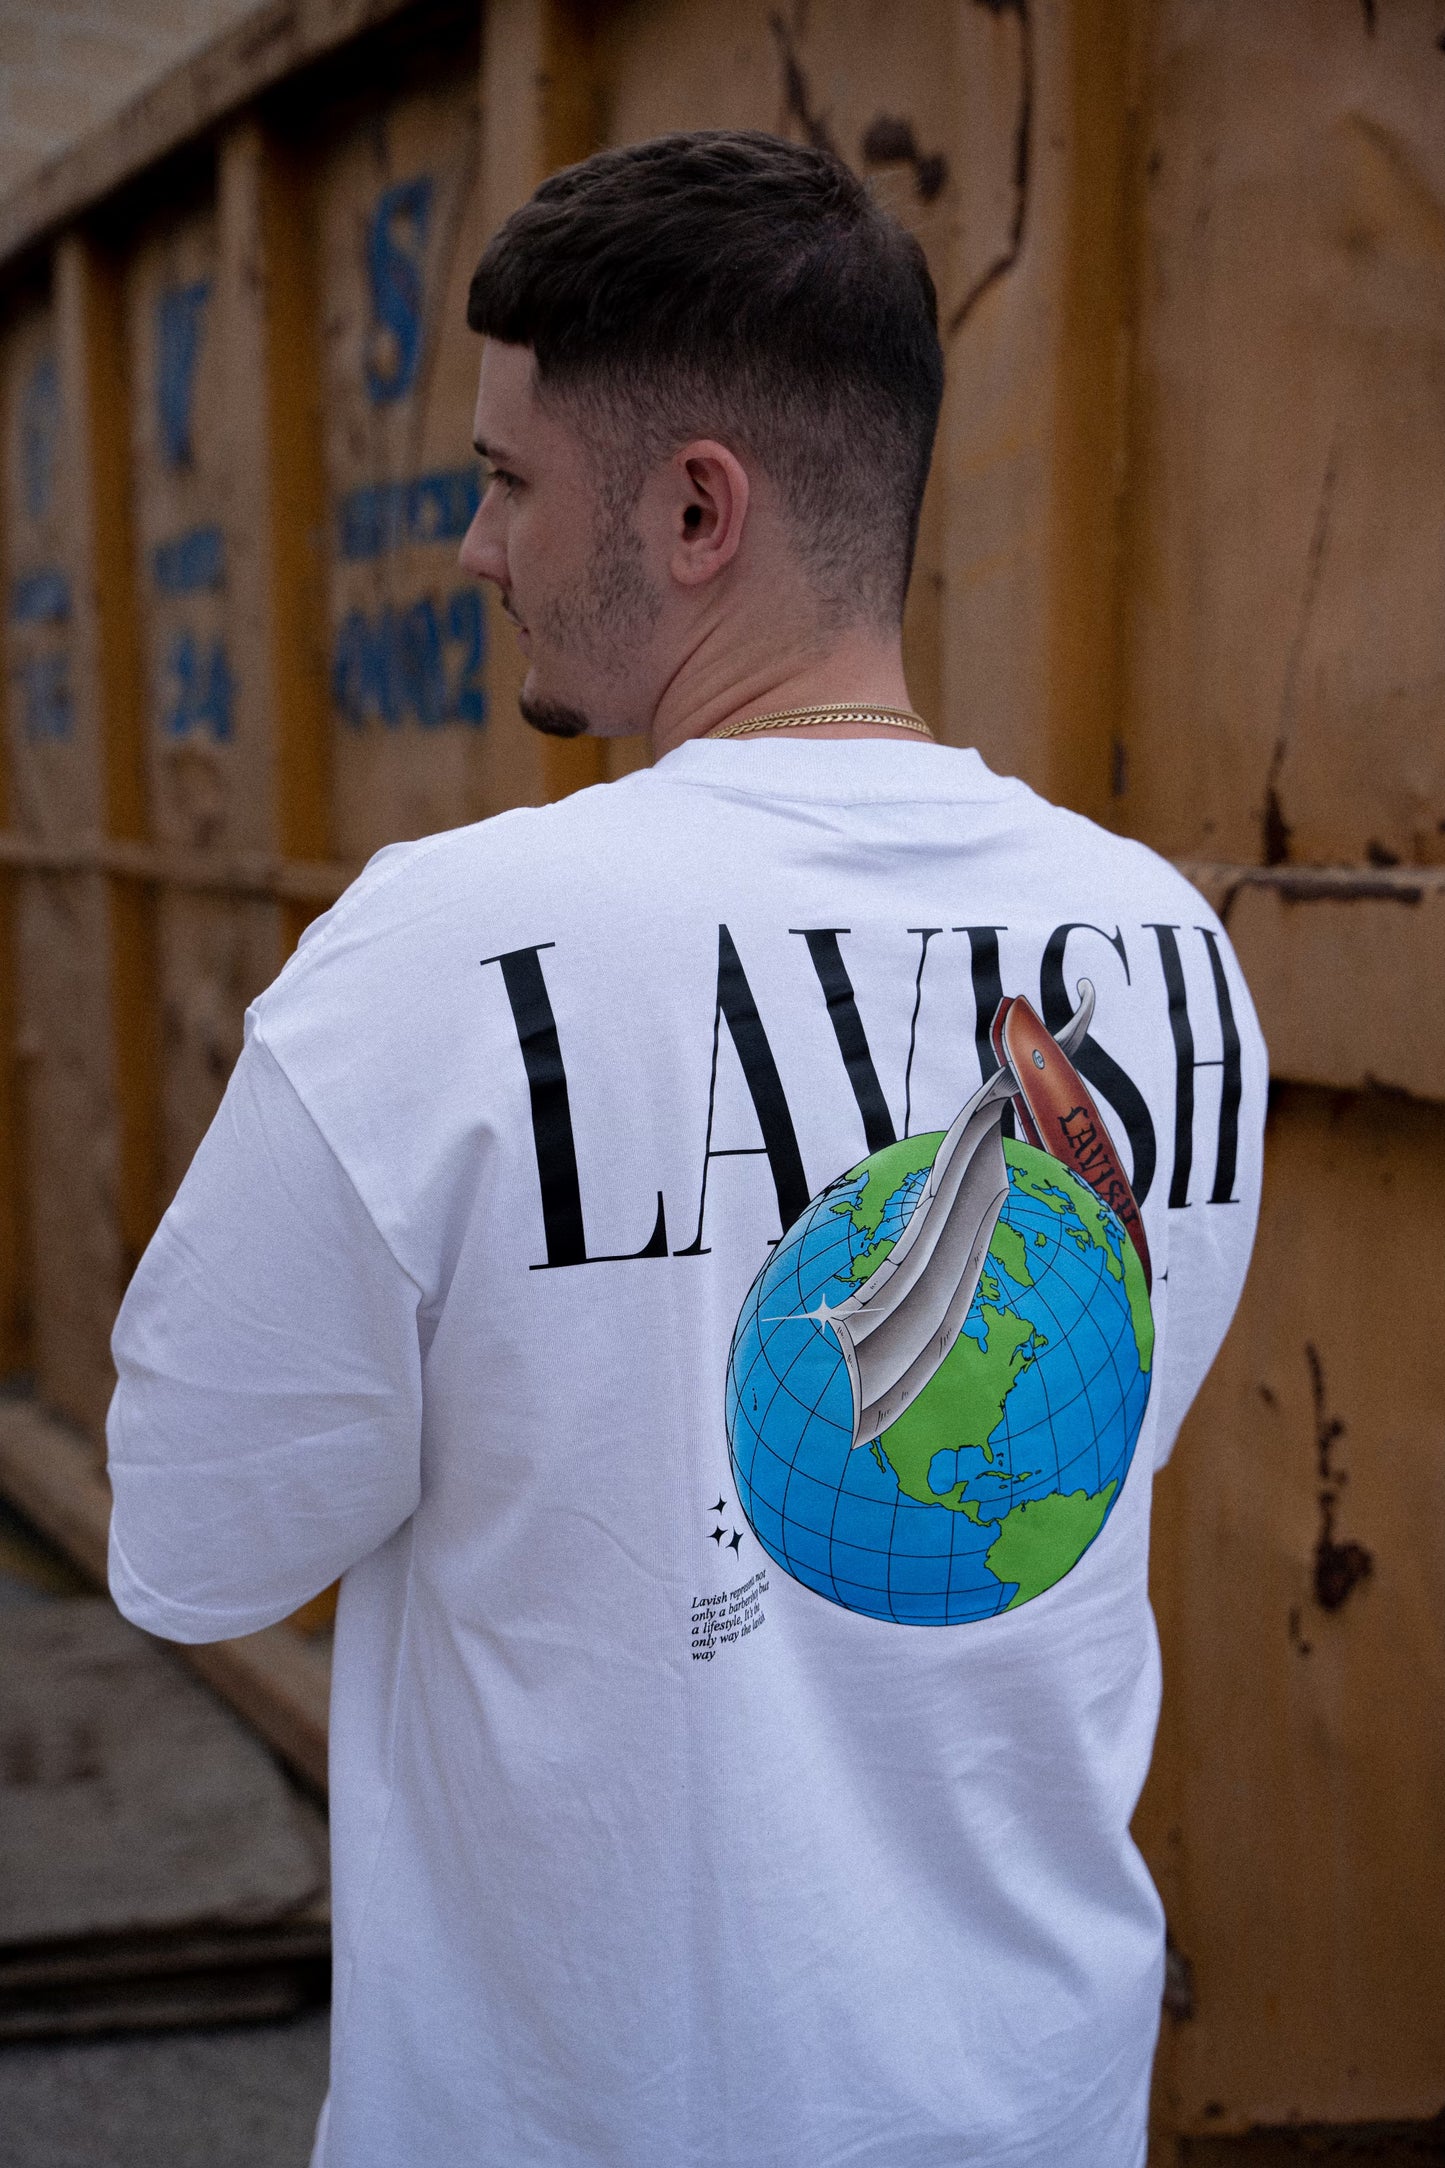 Lavish Short Sleeve T-shirt